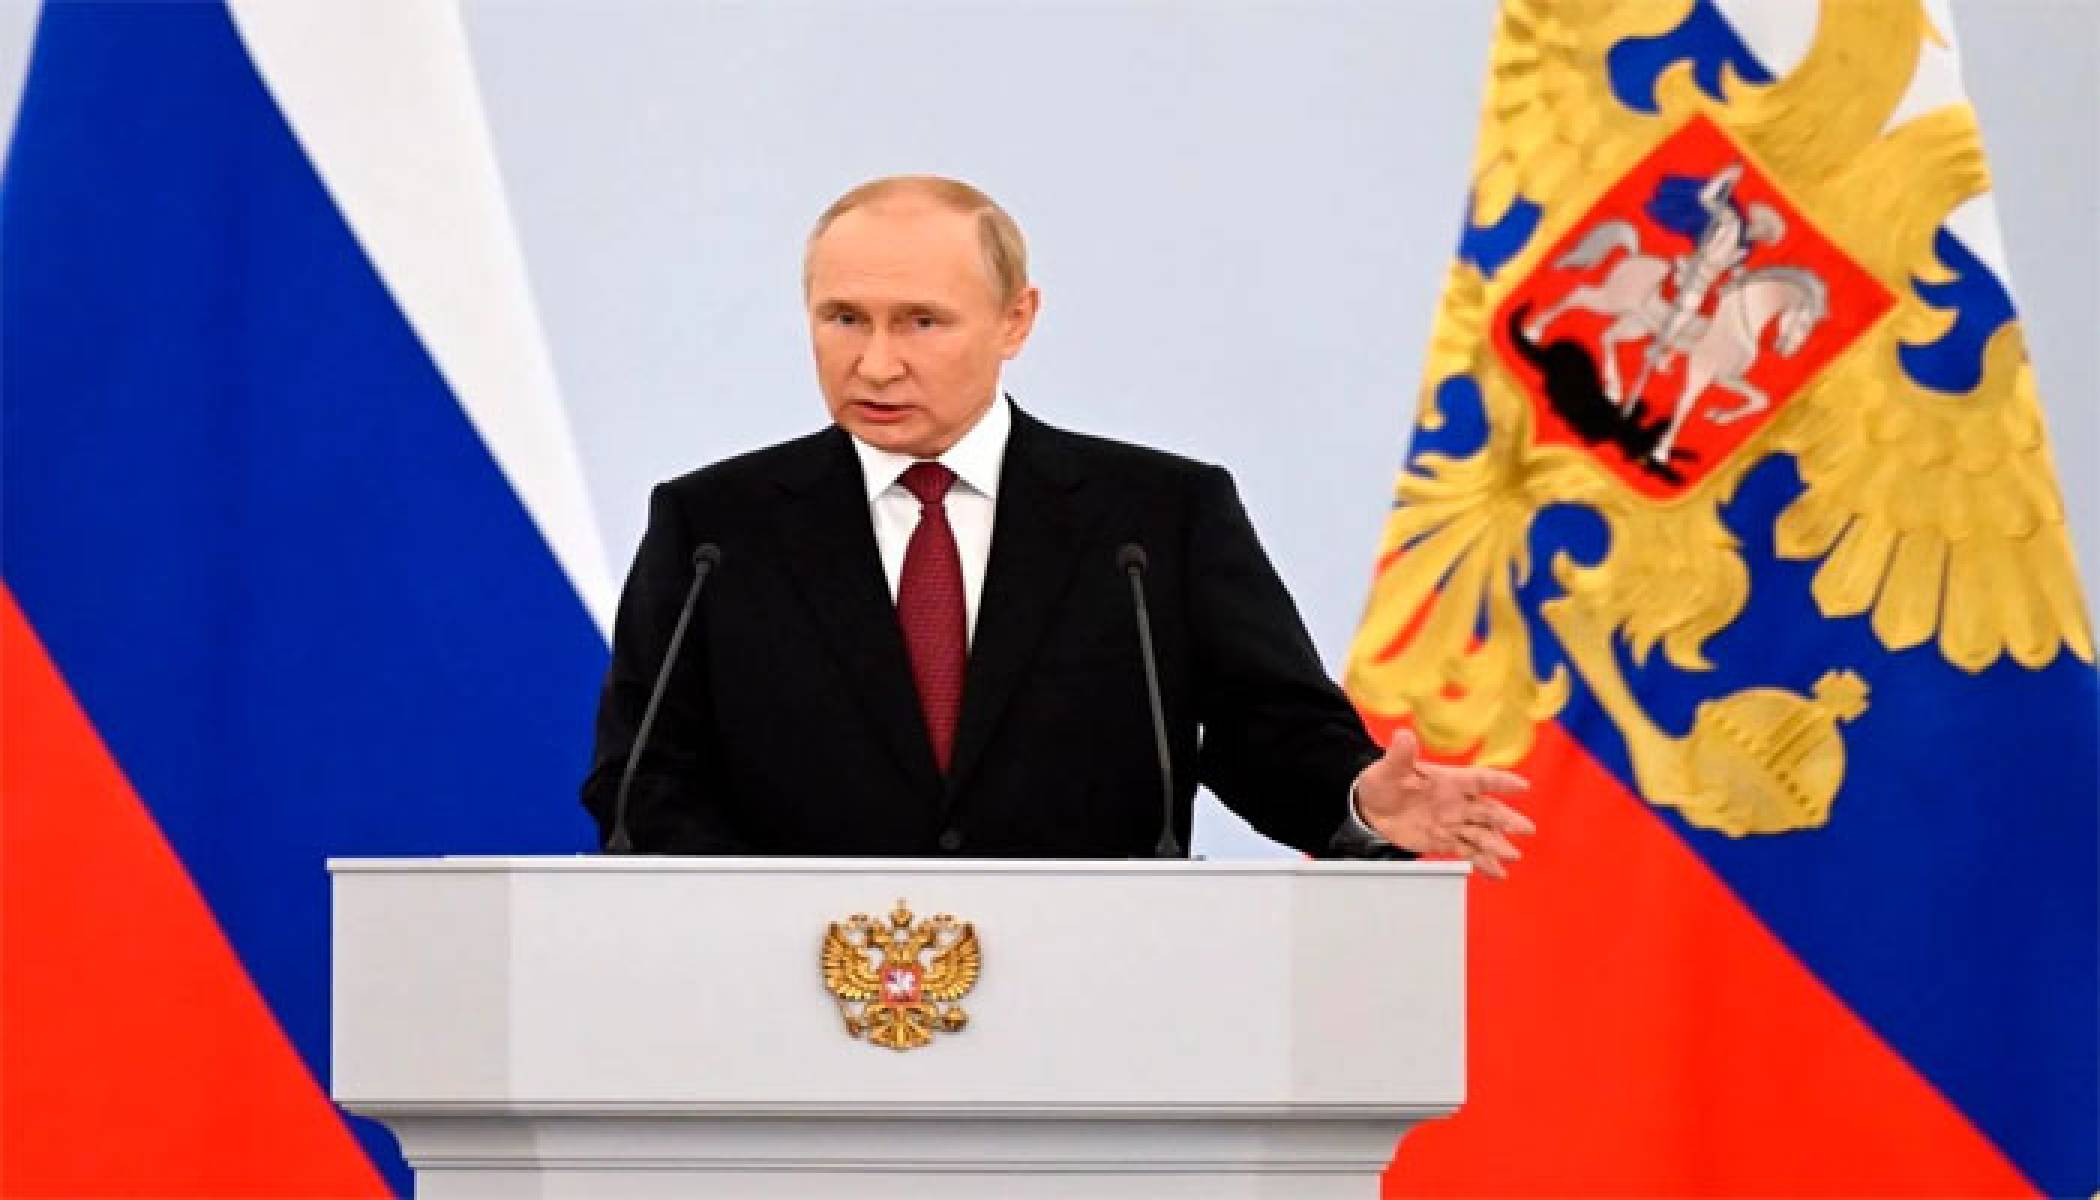 بوتين يوقع على اتفاق ضم المناطق الأوكرانية الأربع ويؤكد: روسيا ستدافع عن أراضيها الجديدة بكل الوسائل المتاحة